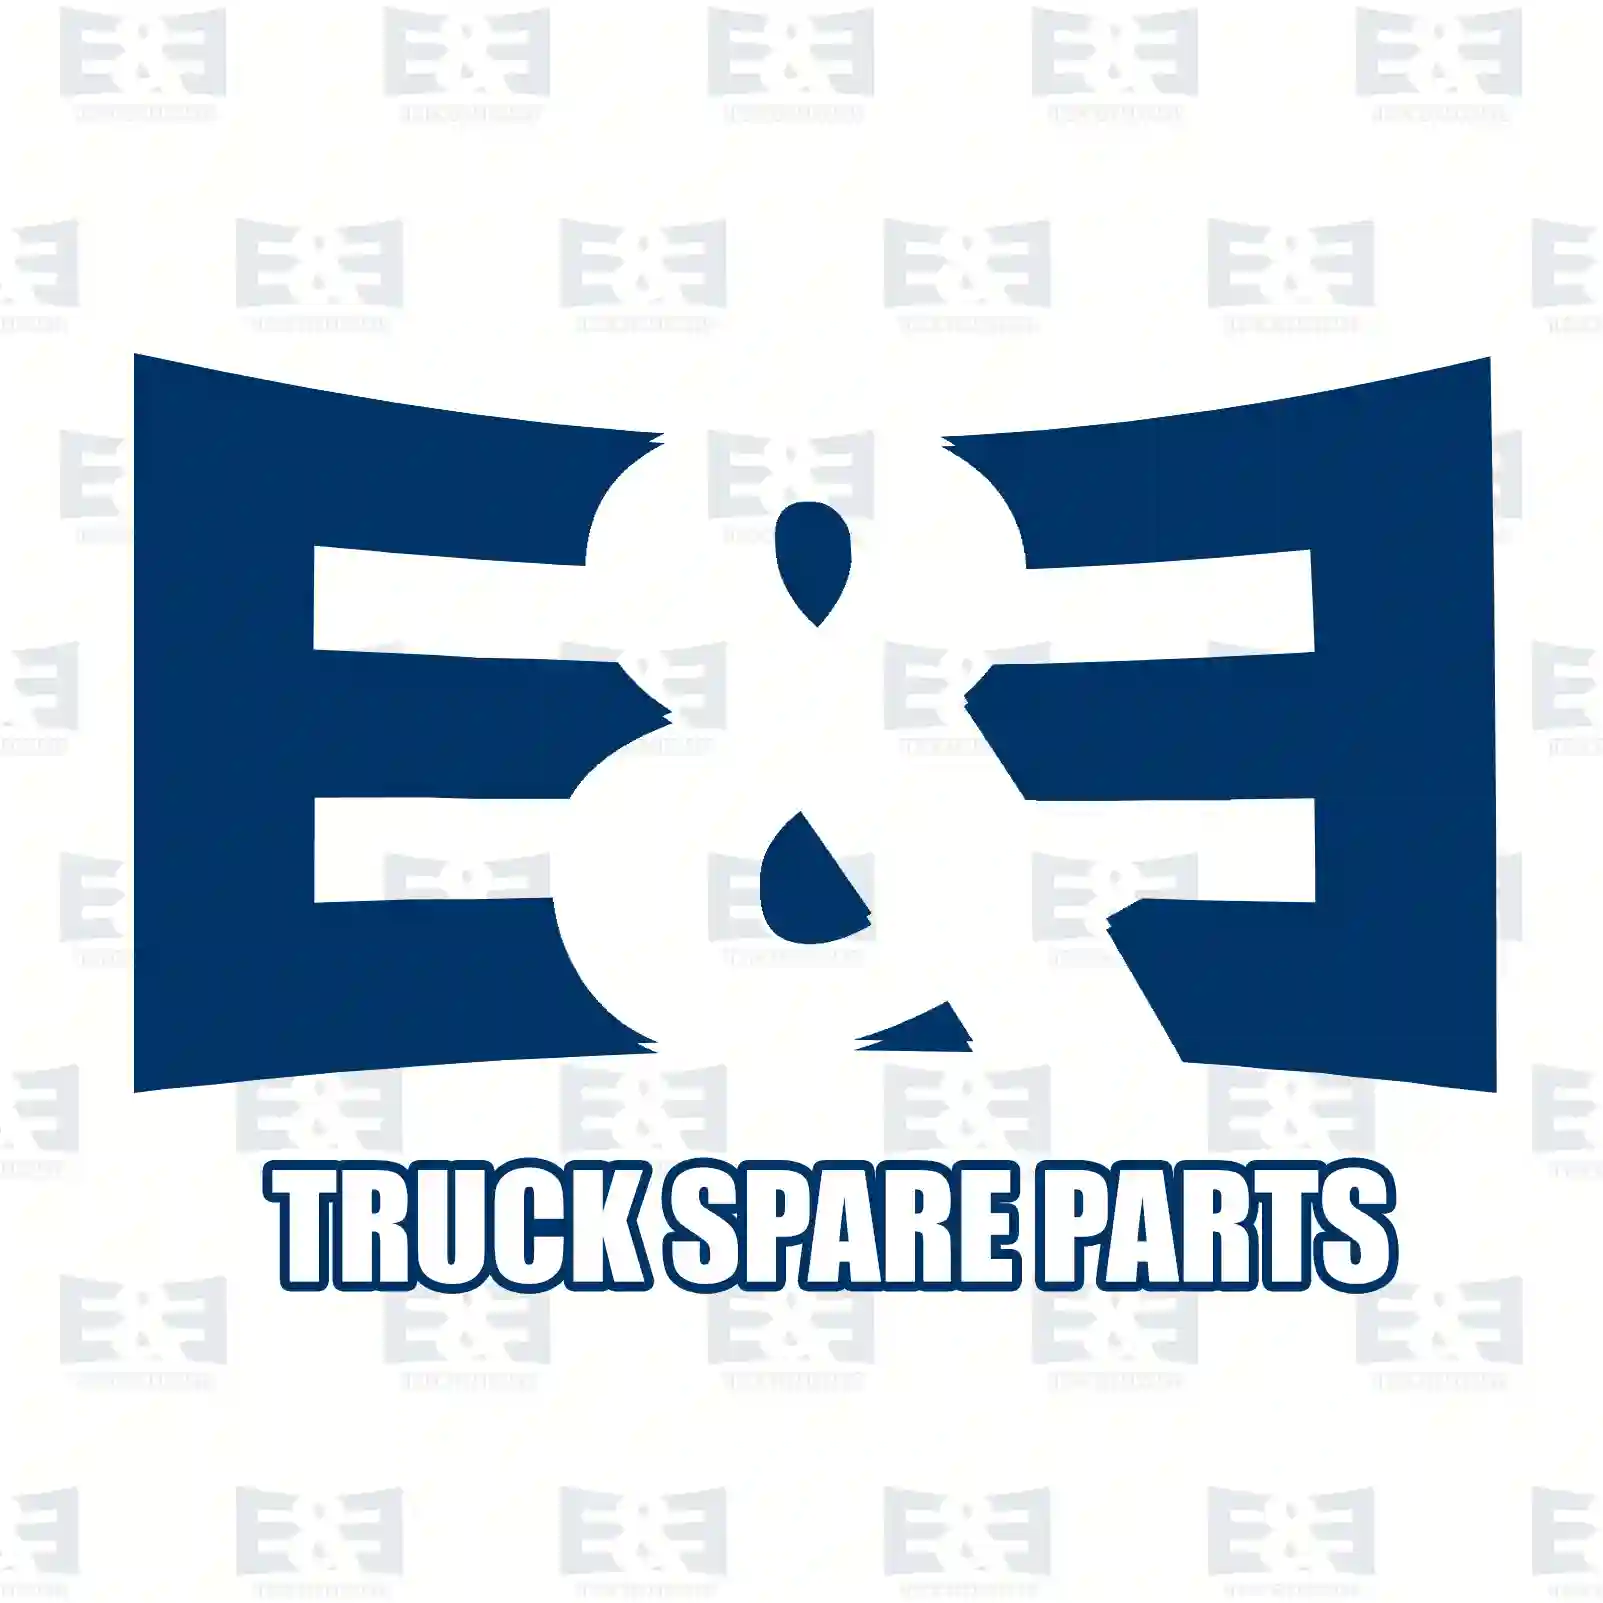 Camshaft, 2E2206490, 1439779, 1509917, 509917 ||  2E2206490 E&E Truck Spare Parts | Truck Spare Parts, Auotomotive Spare Parts Camshaft, 2E2206490, 1439779, 1509917, 509917 ||  2E2206490 E&E Truck Spare Parts | Truck Spare Parts, Auotomotive Spare Parts